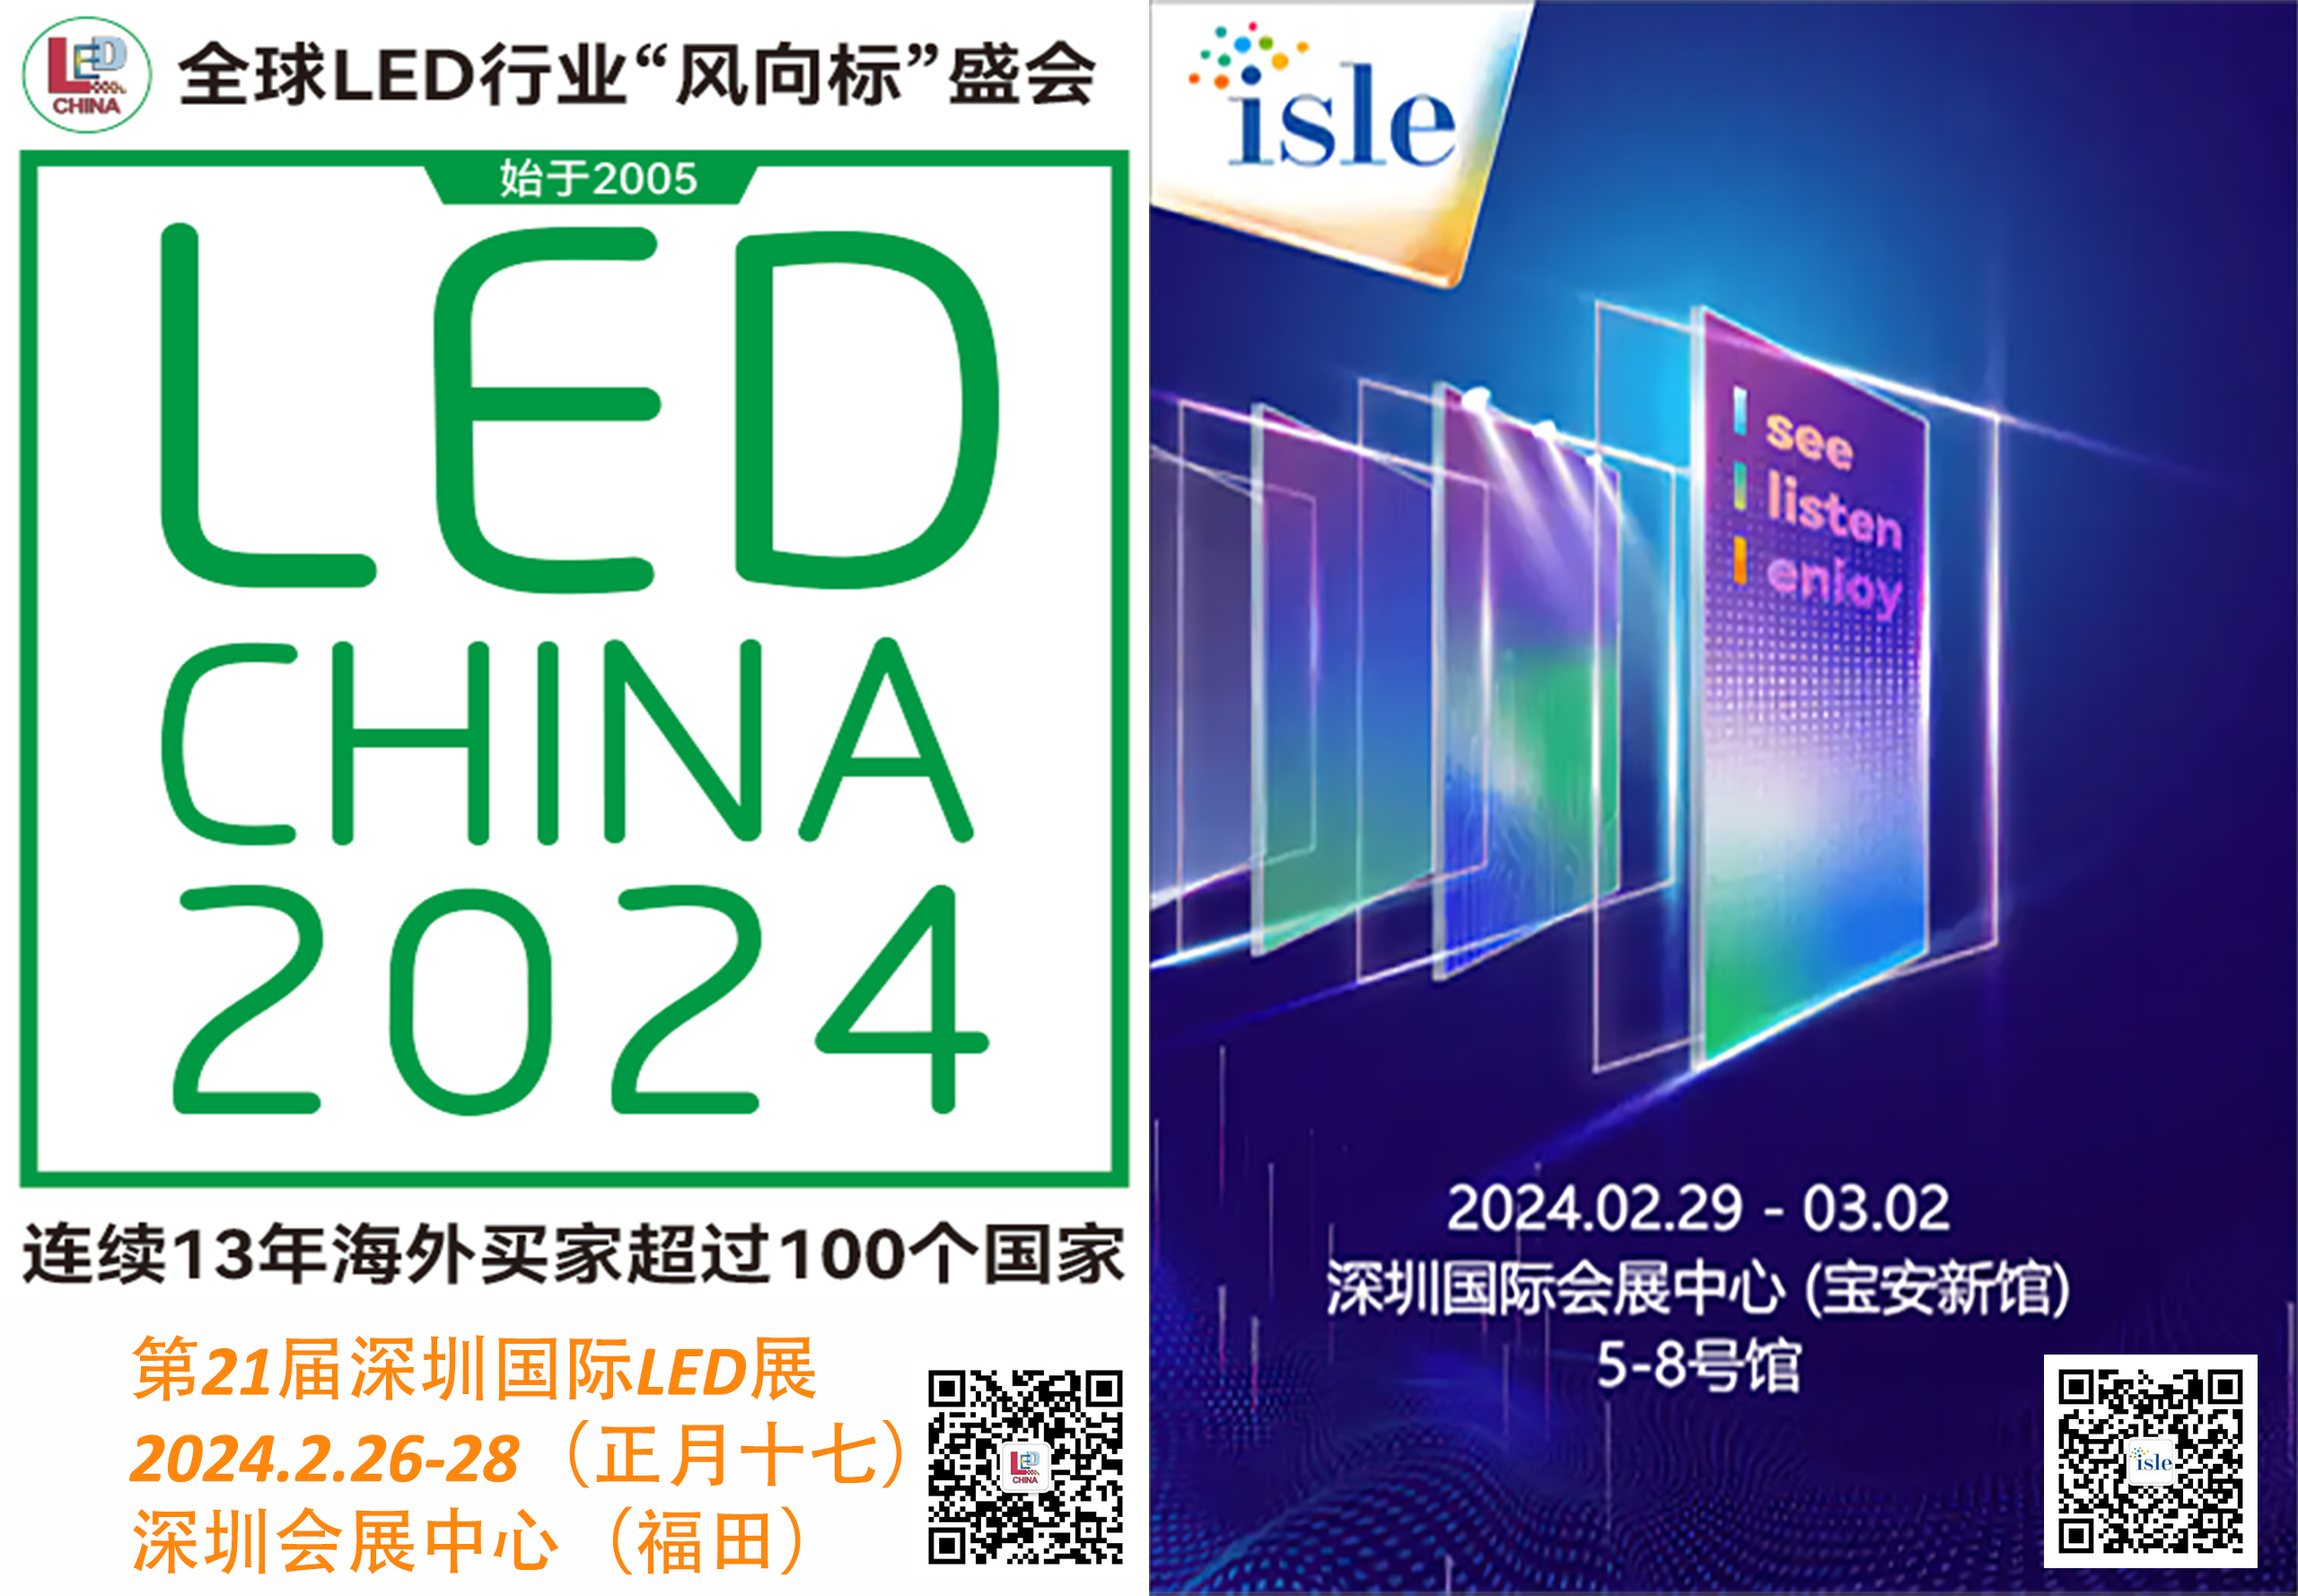 ¡Gran semana la próxima semana en Shenzhen para la industria de señalización digital LED!